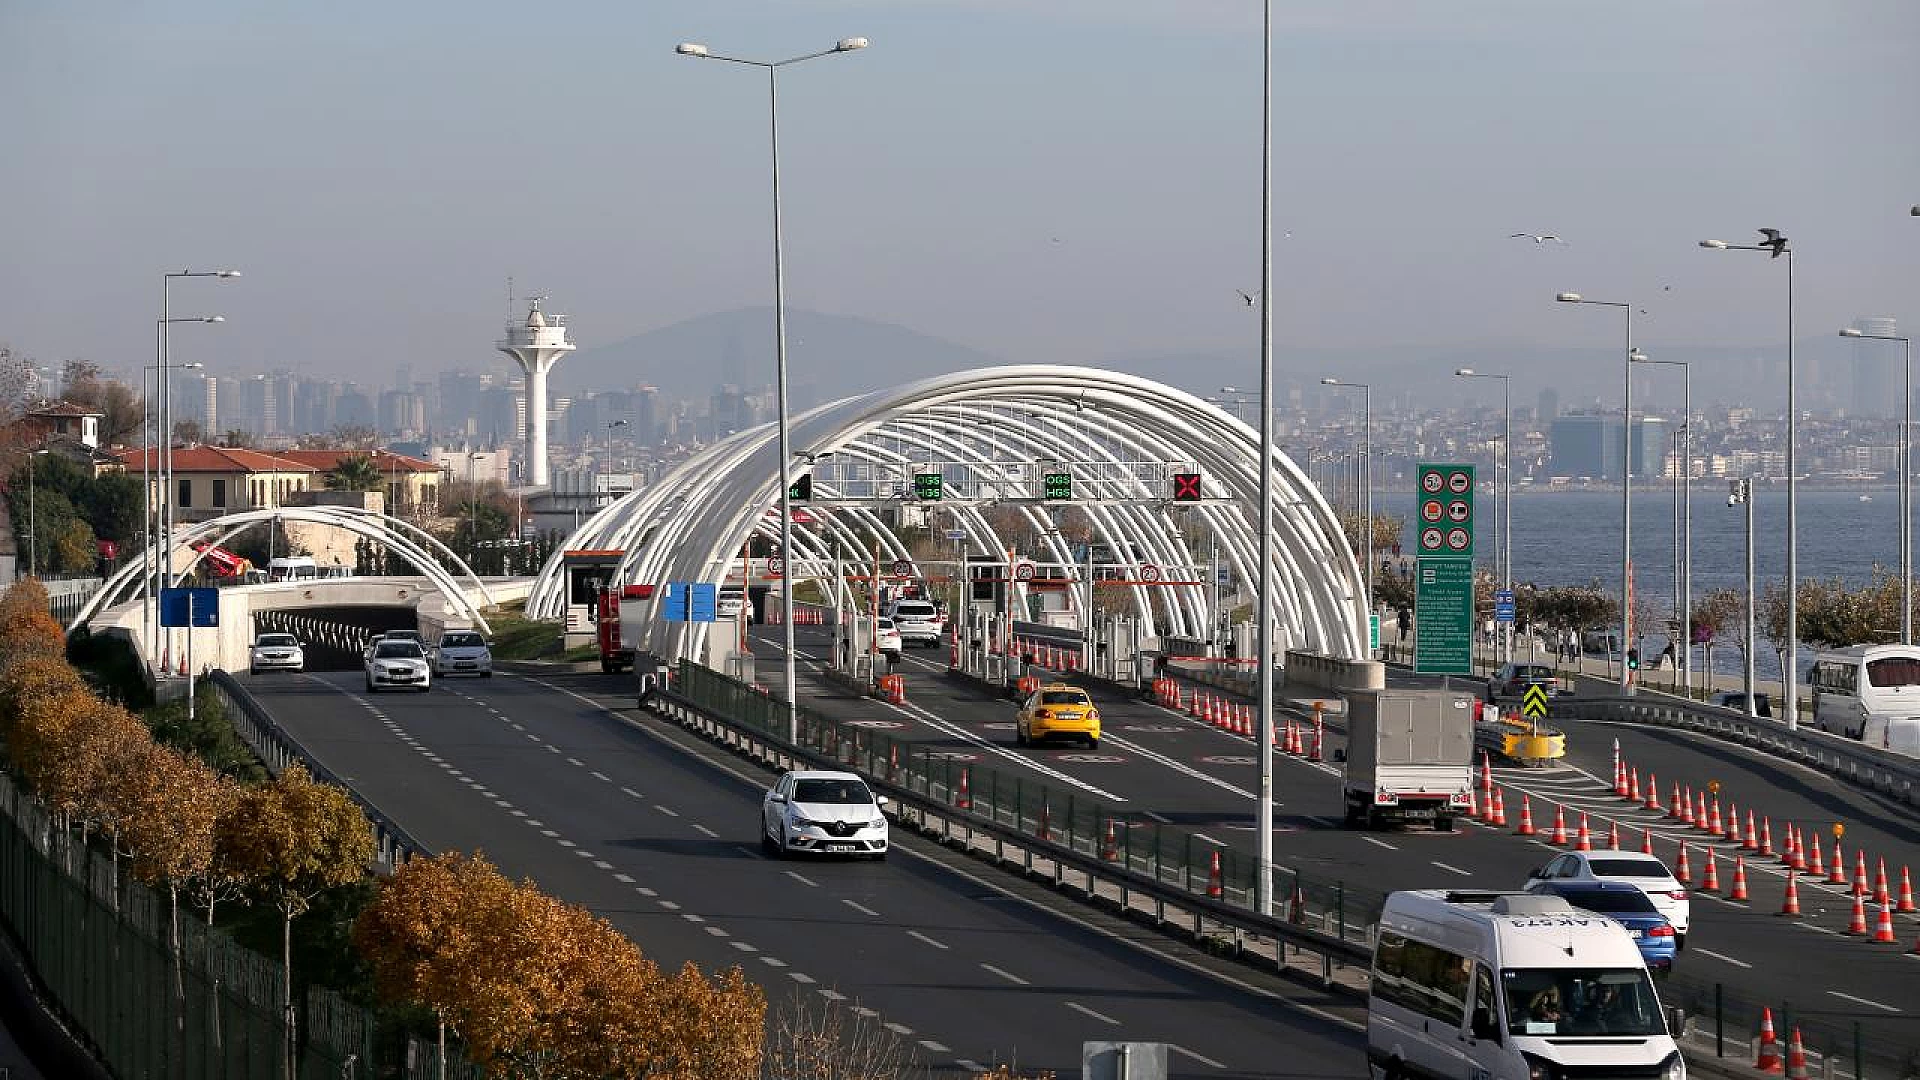 Avrasya Tüneli-TEM Anadolu Otoyolu Bağlantı Yolu açıldı